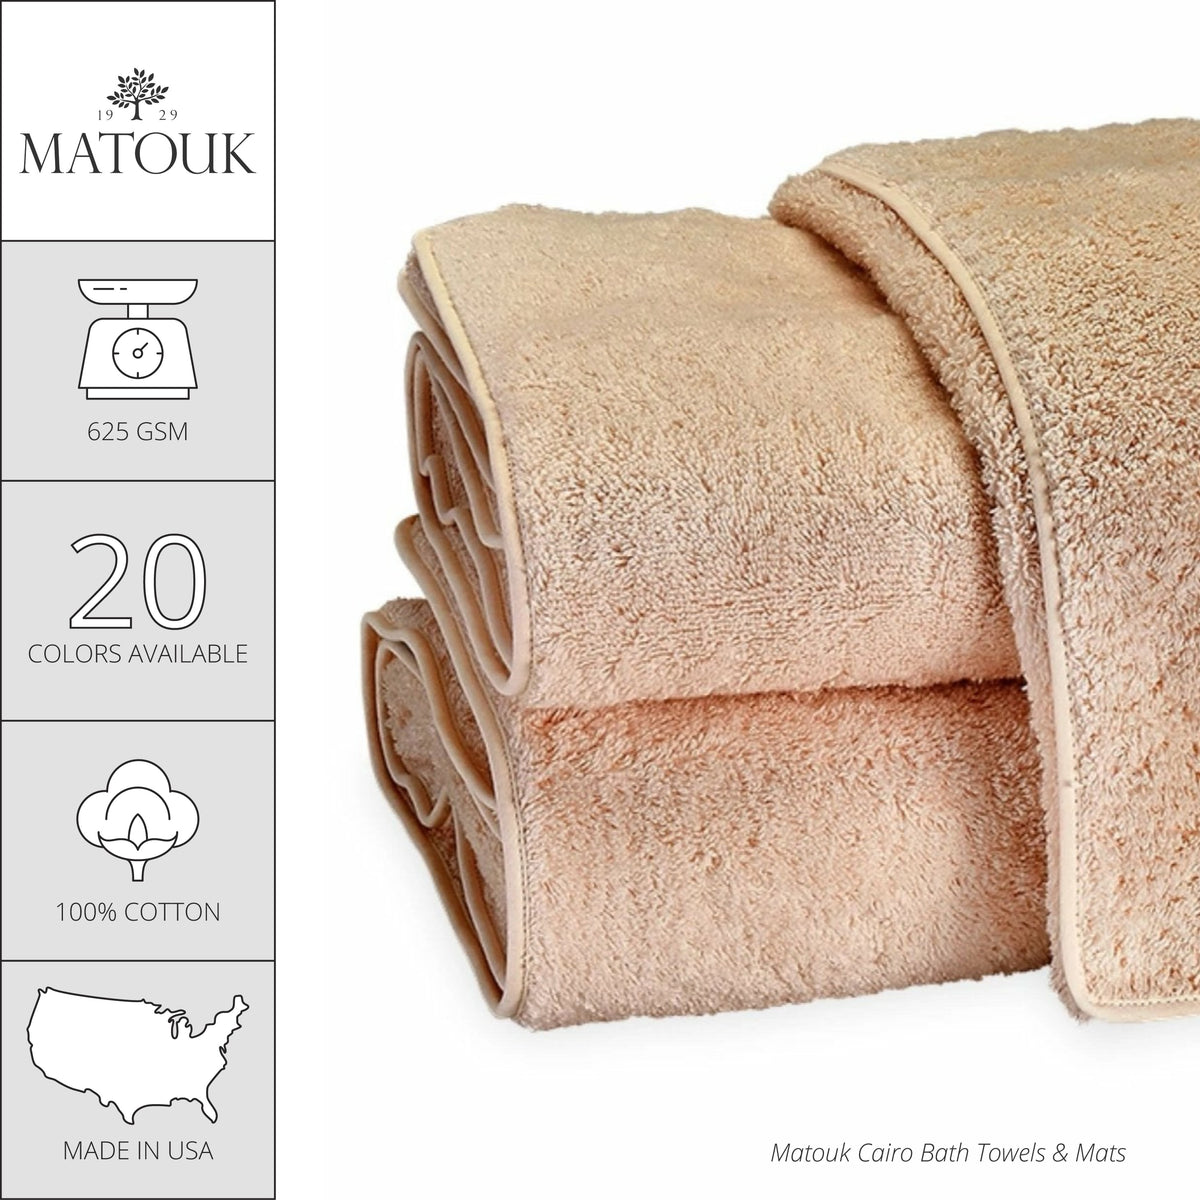 Matouk Cairo Bath Towels and Mats - Smoke Gray/Smoke Gray